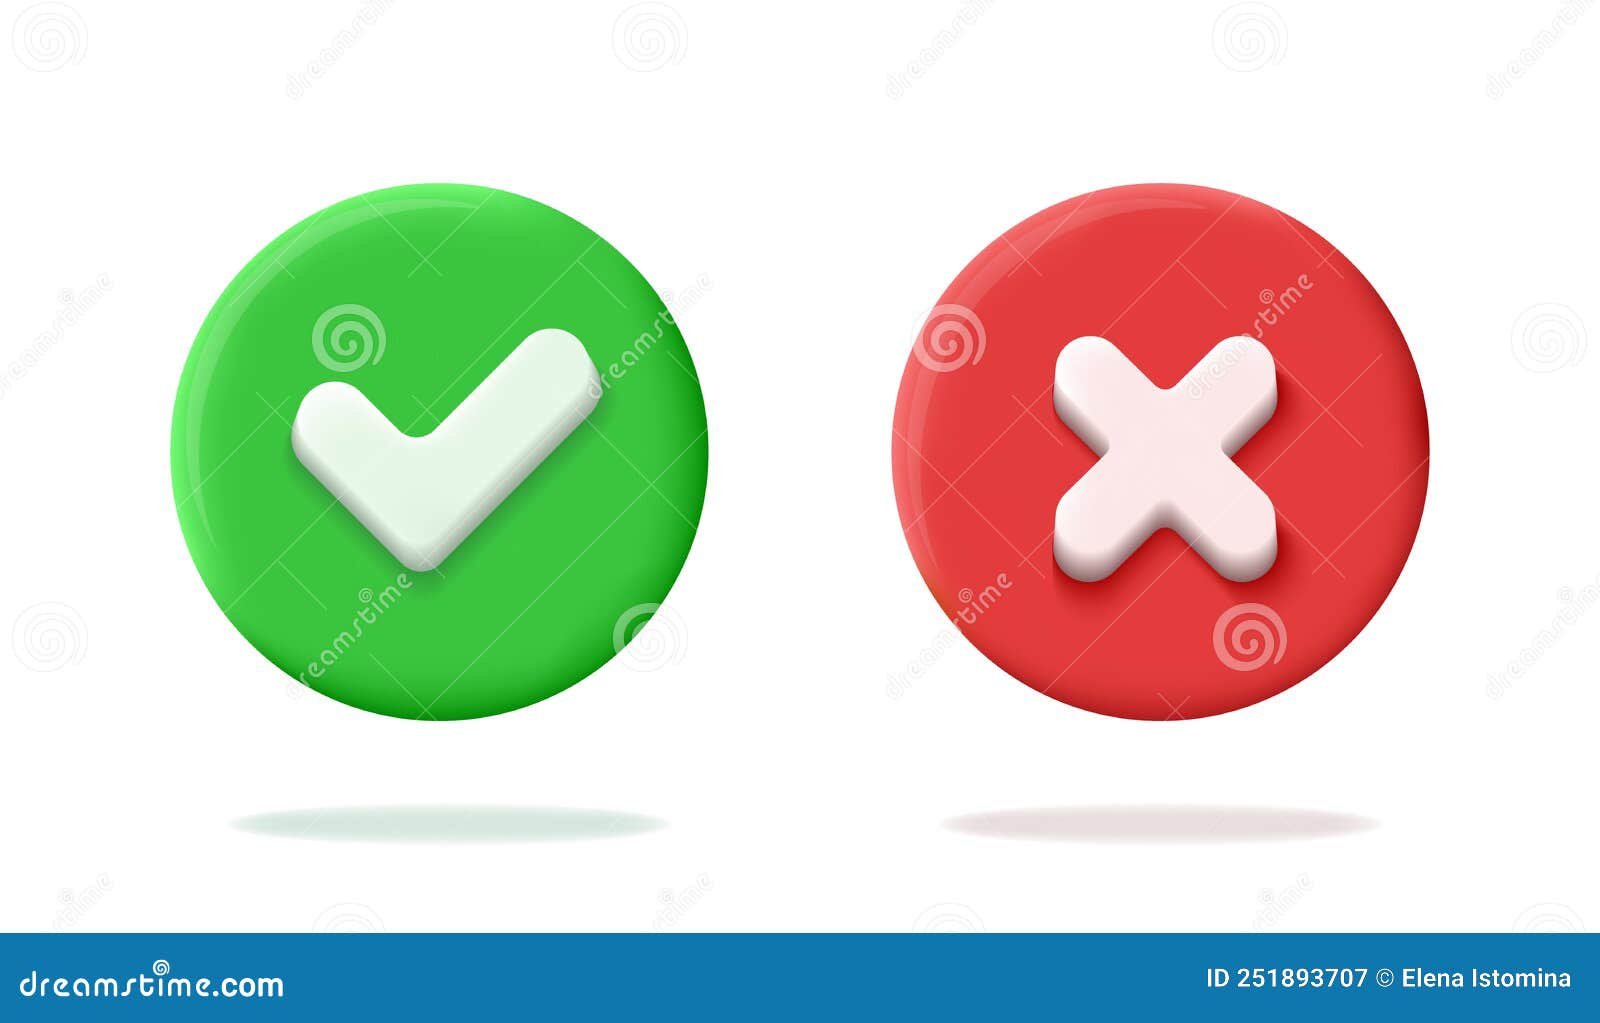 Những nút tròn đỏ và xanh đẹp mắt này trông giống như những viên kẹo cứng sáng màu. Những nút bấm tròn được đặt tinh tế và cân đối, tạo nên một hình thức hài hòa mà khi nhìn vào hình ảnh liên quan đến từ khóa này, bạn không thể không cảm thấy thú vị và hứng thú.